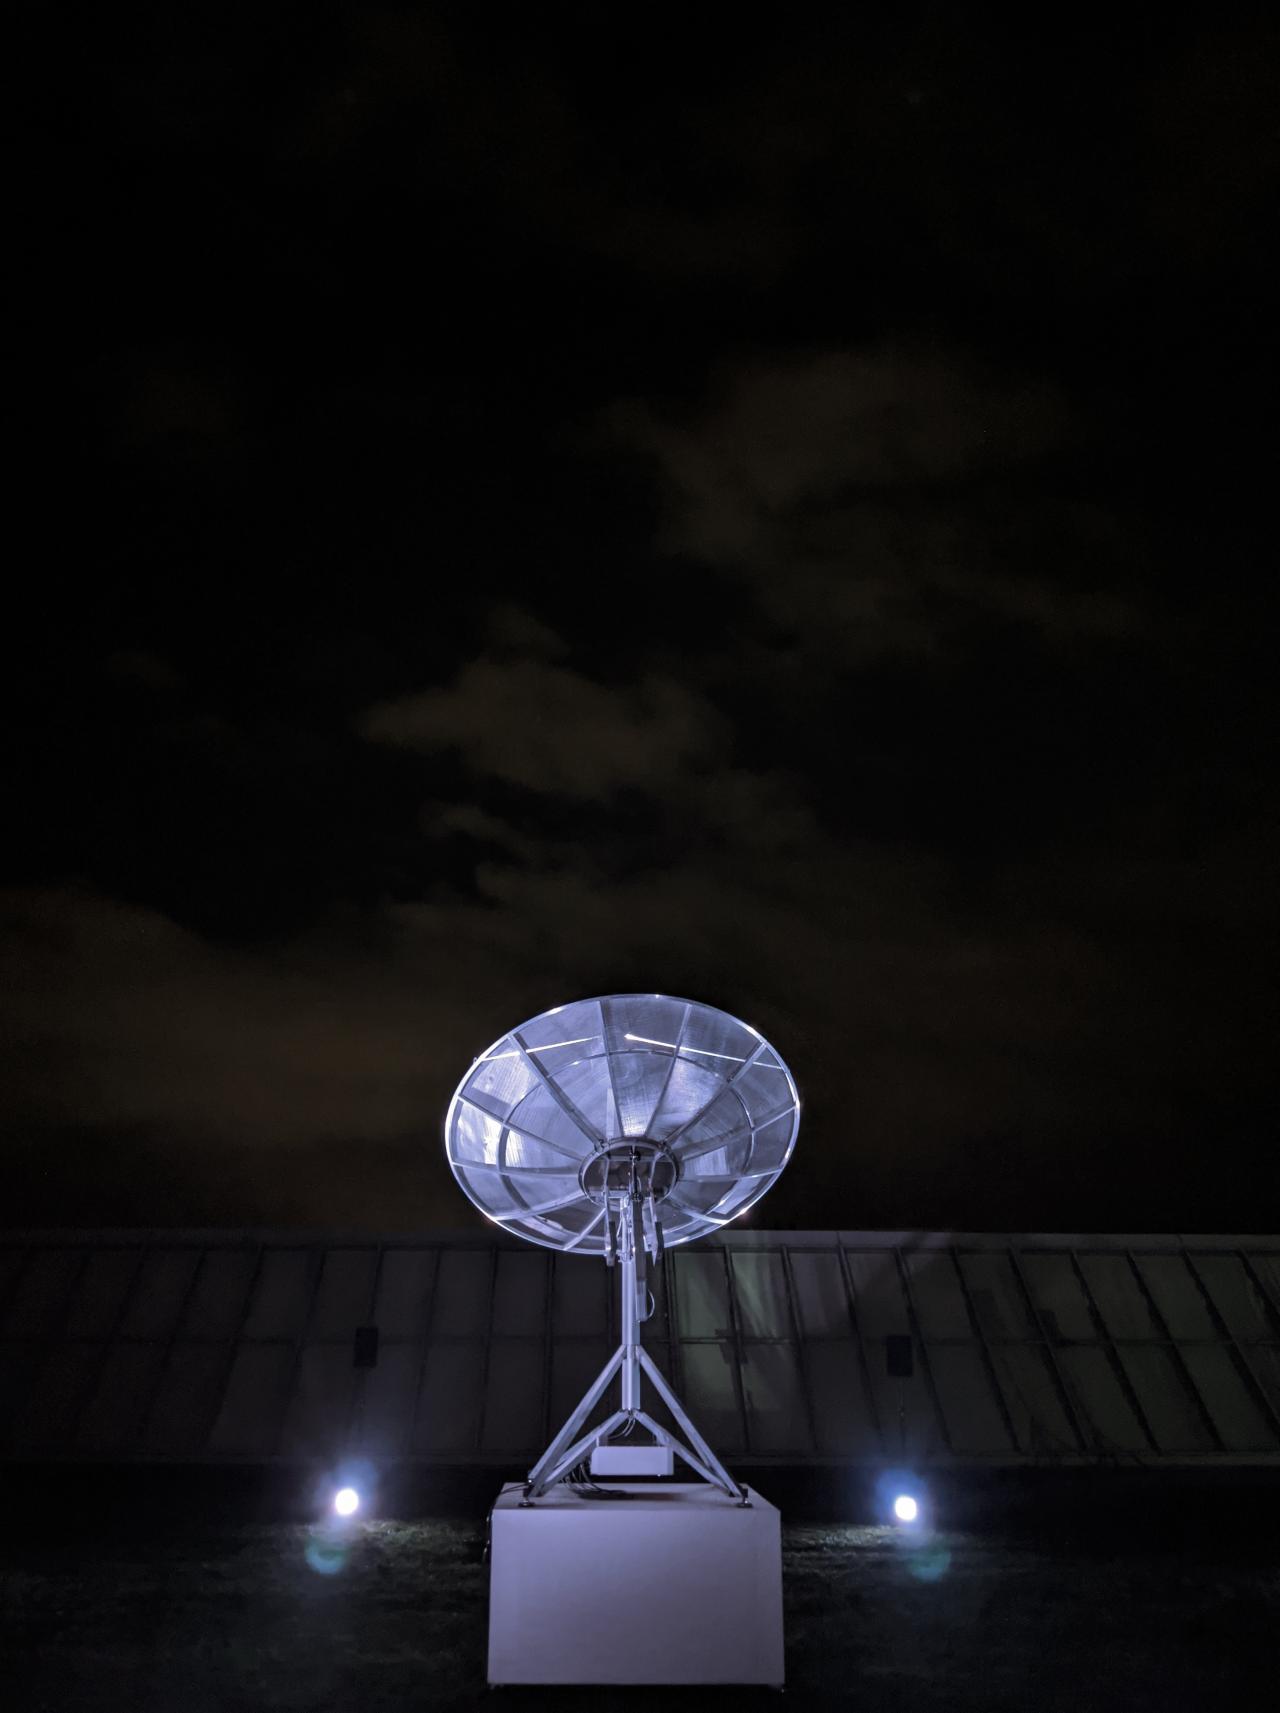 Radioteleskop bei Nacht.